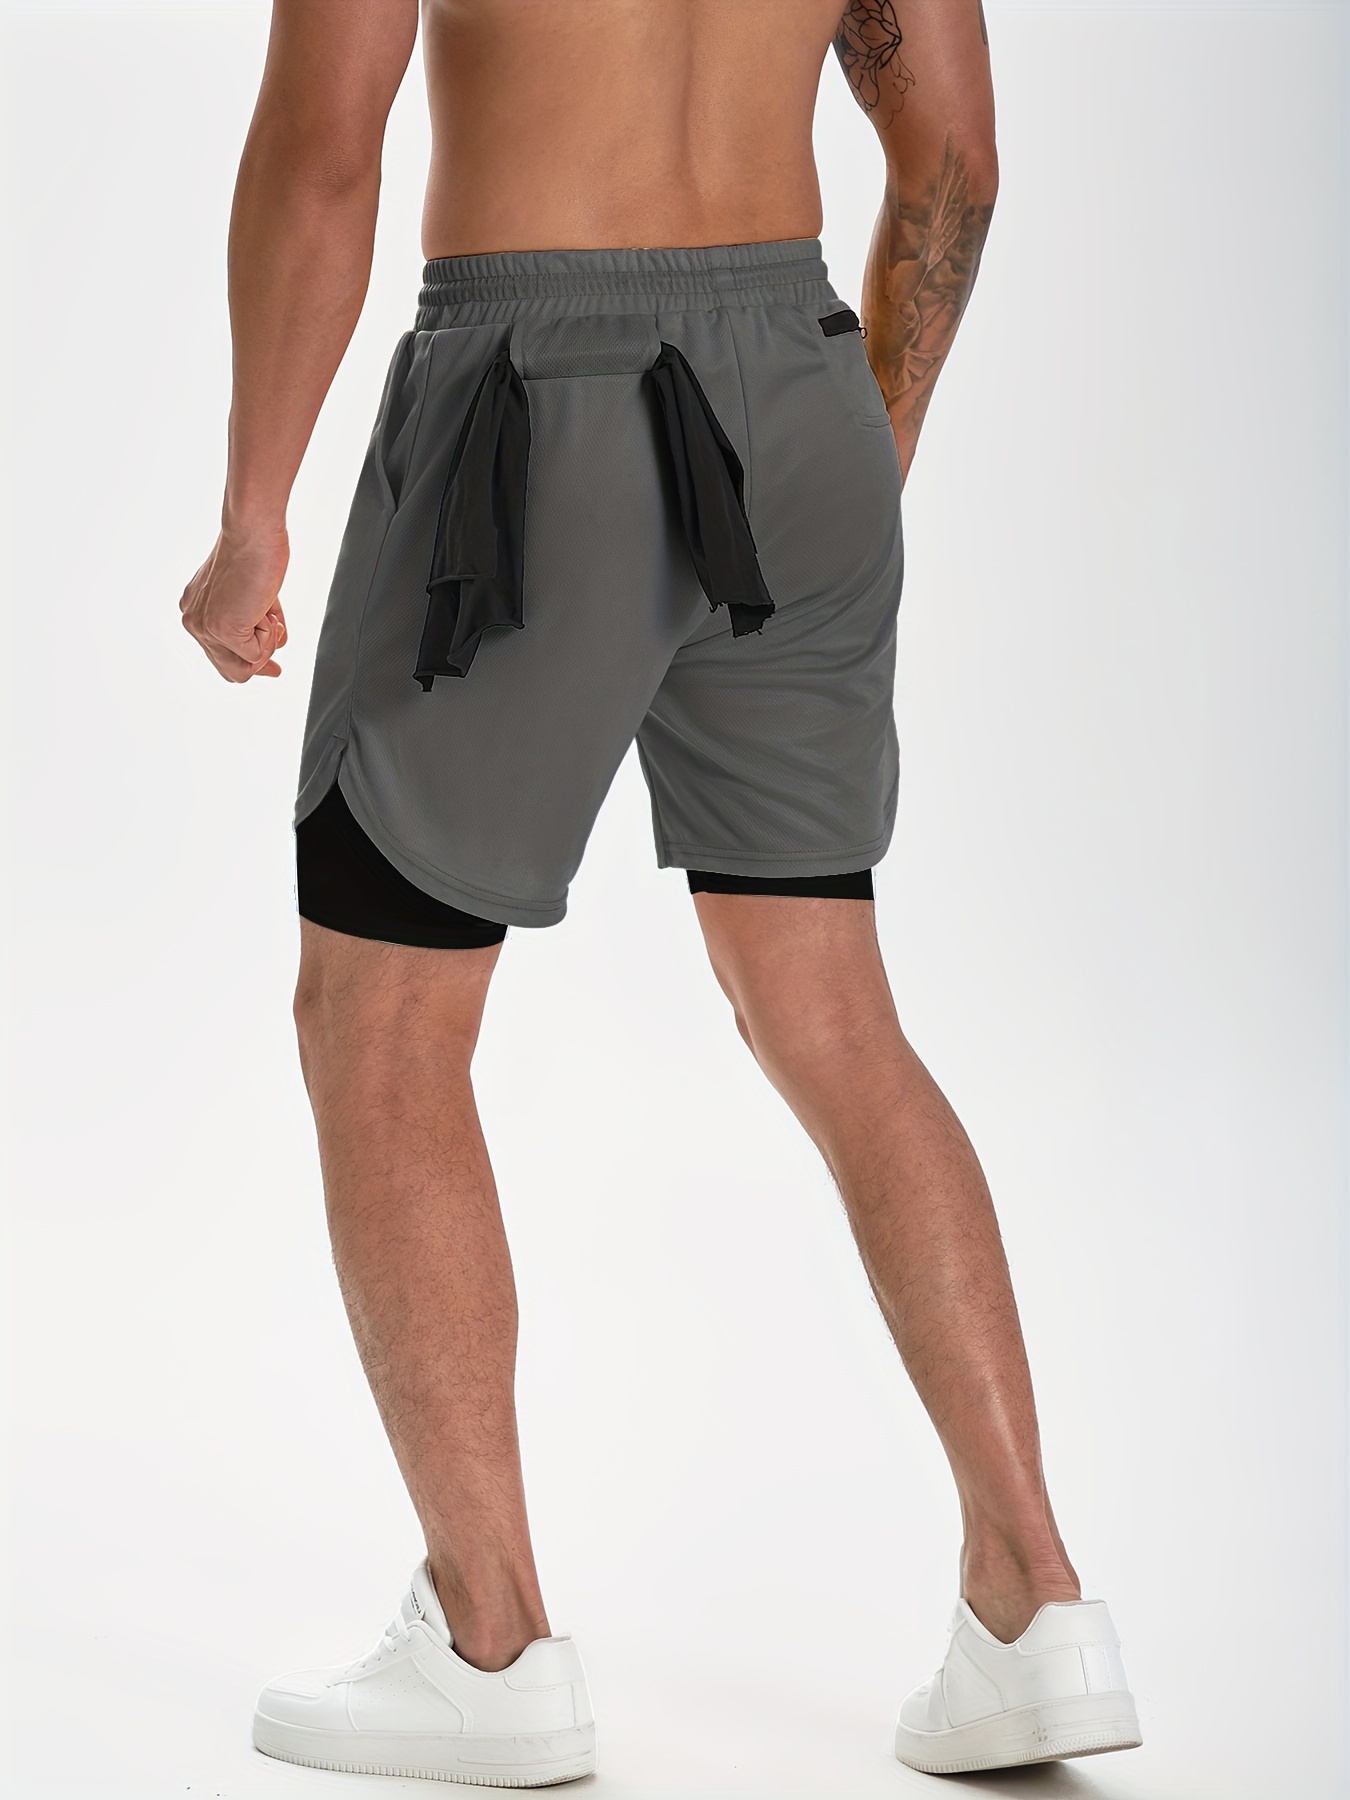 ROCKBROS-pantalones cortos para correr Unisex, ropa para hacer